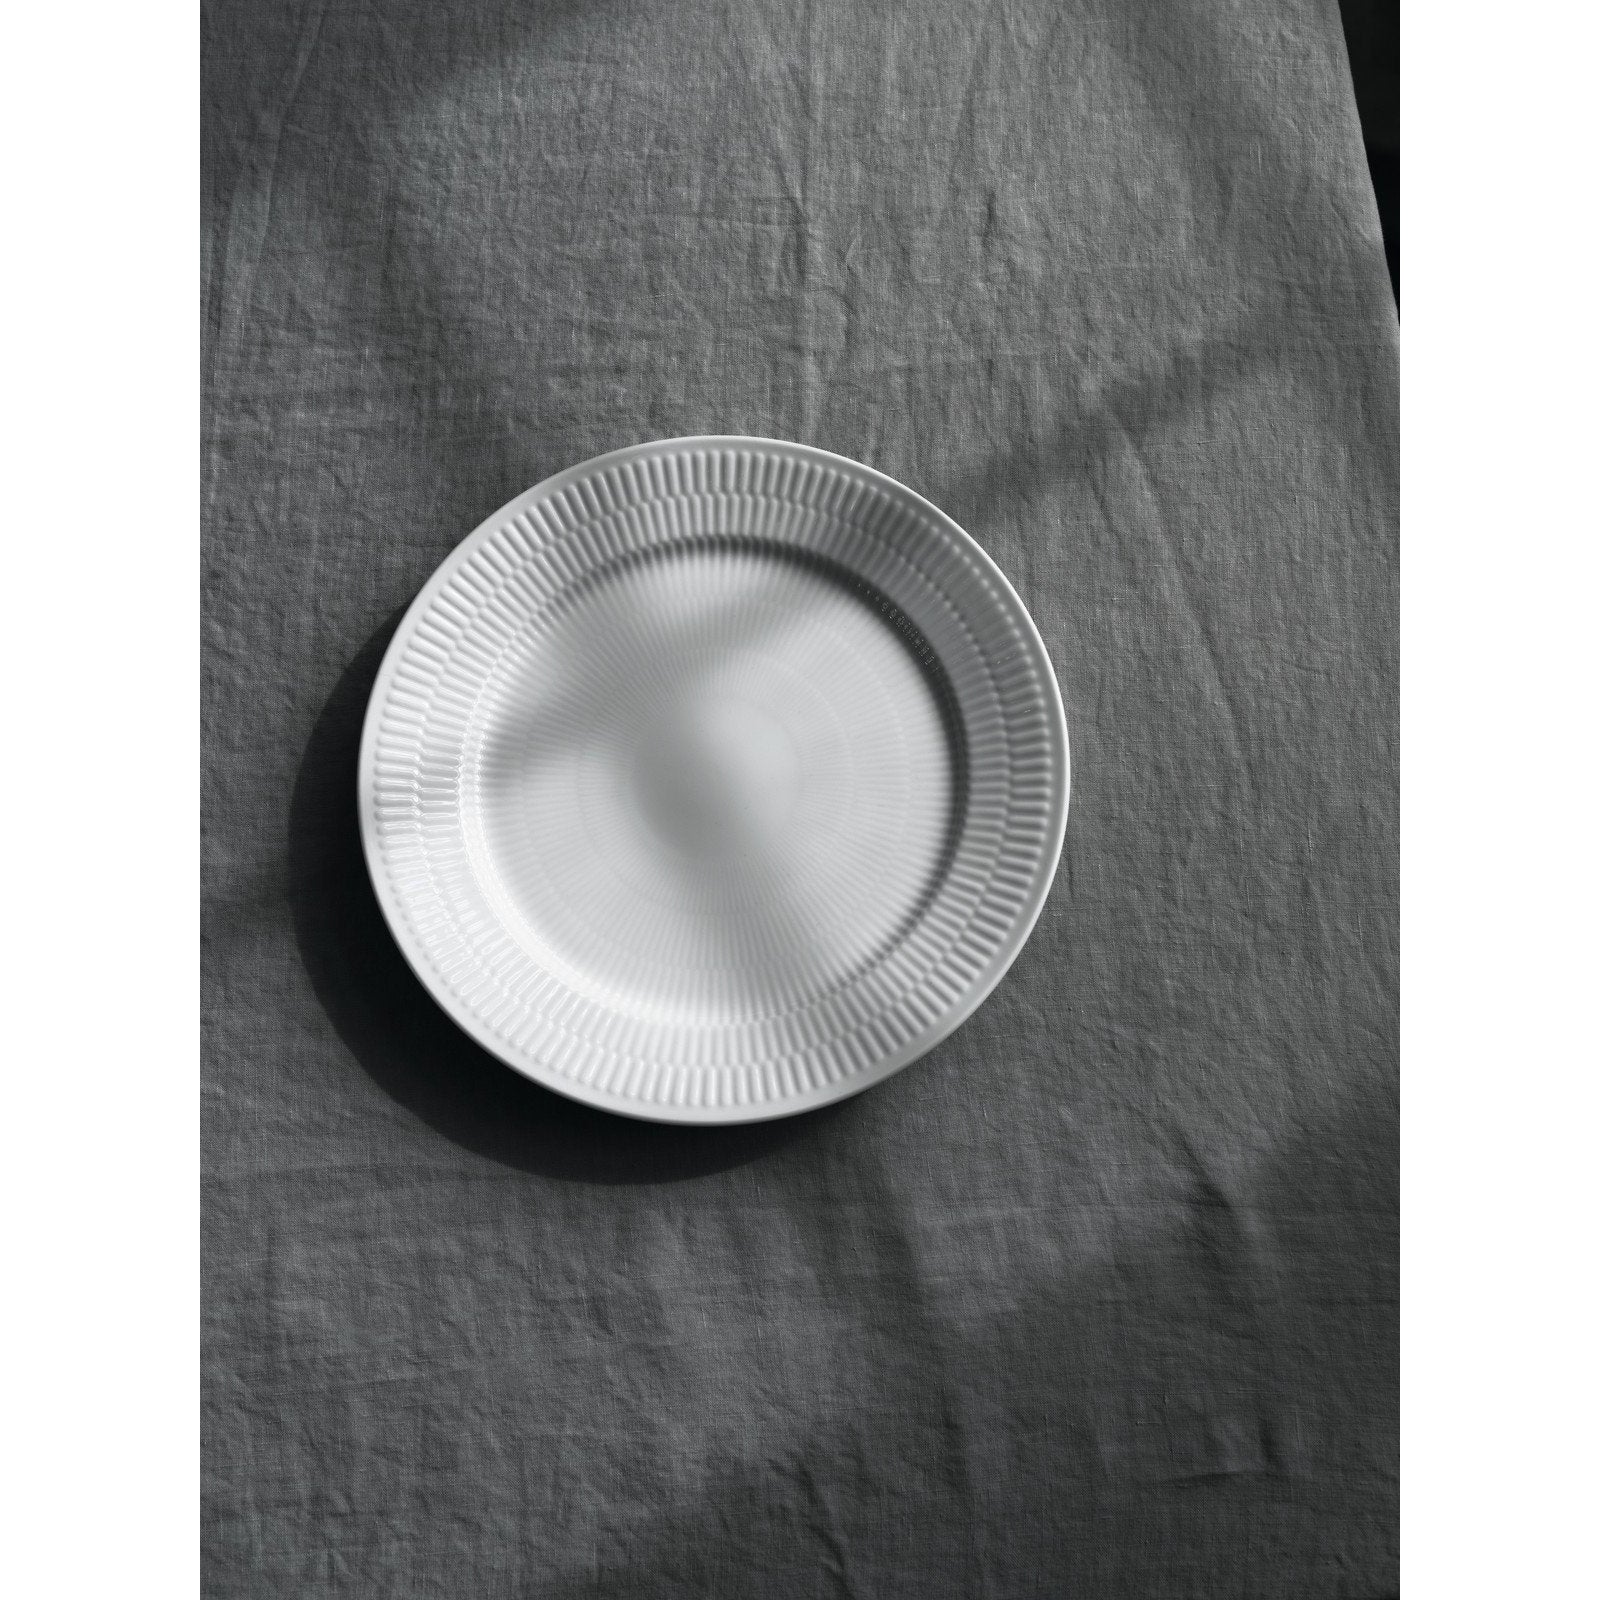 Royal Copenhagen White Pluted Plate, 27 cm